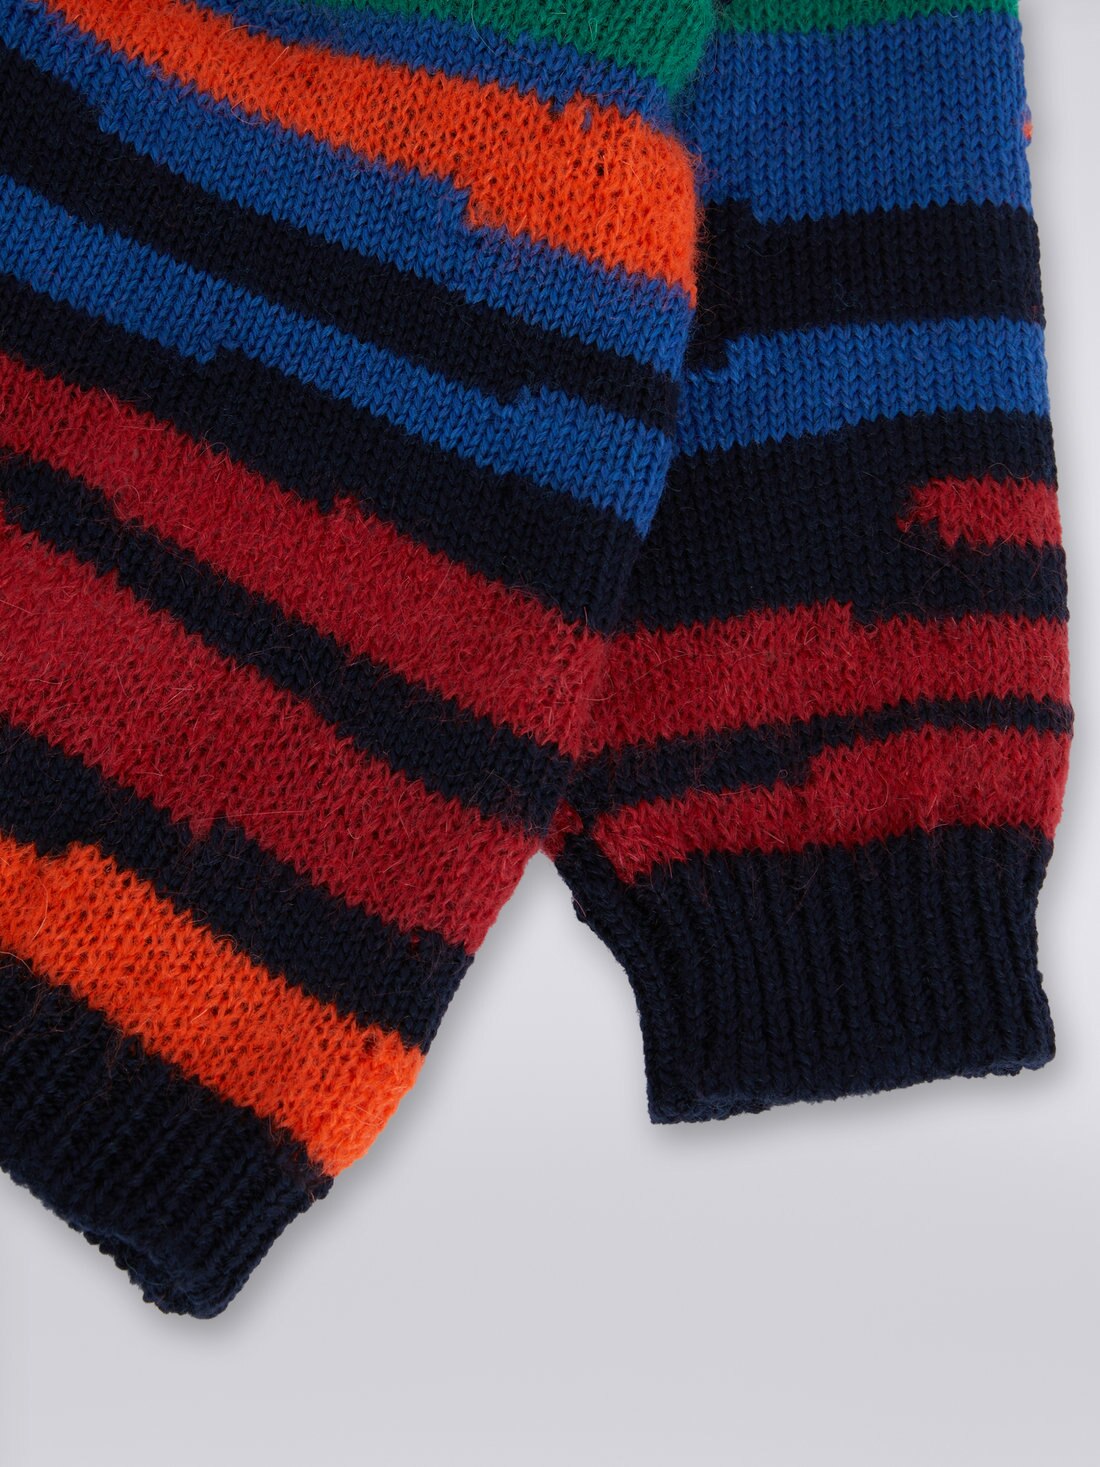 Slub wool knit cardigan, Multicoloured  - KS23WM03BV00E3SM923 - 3